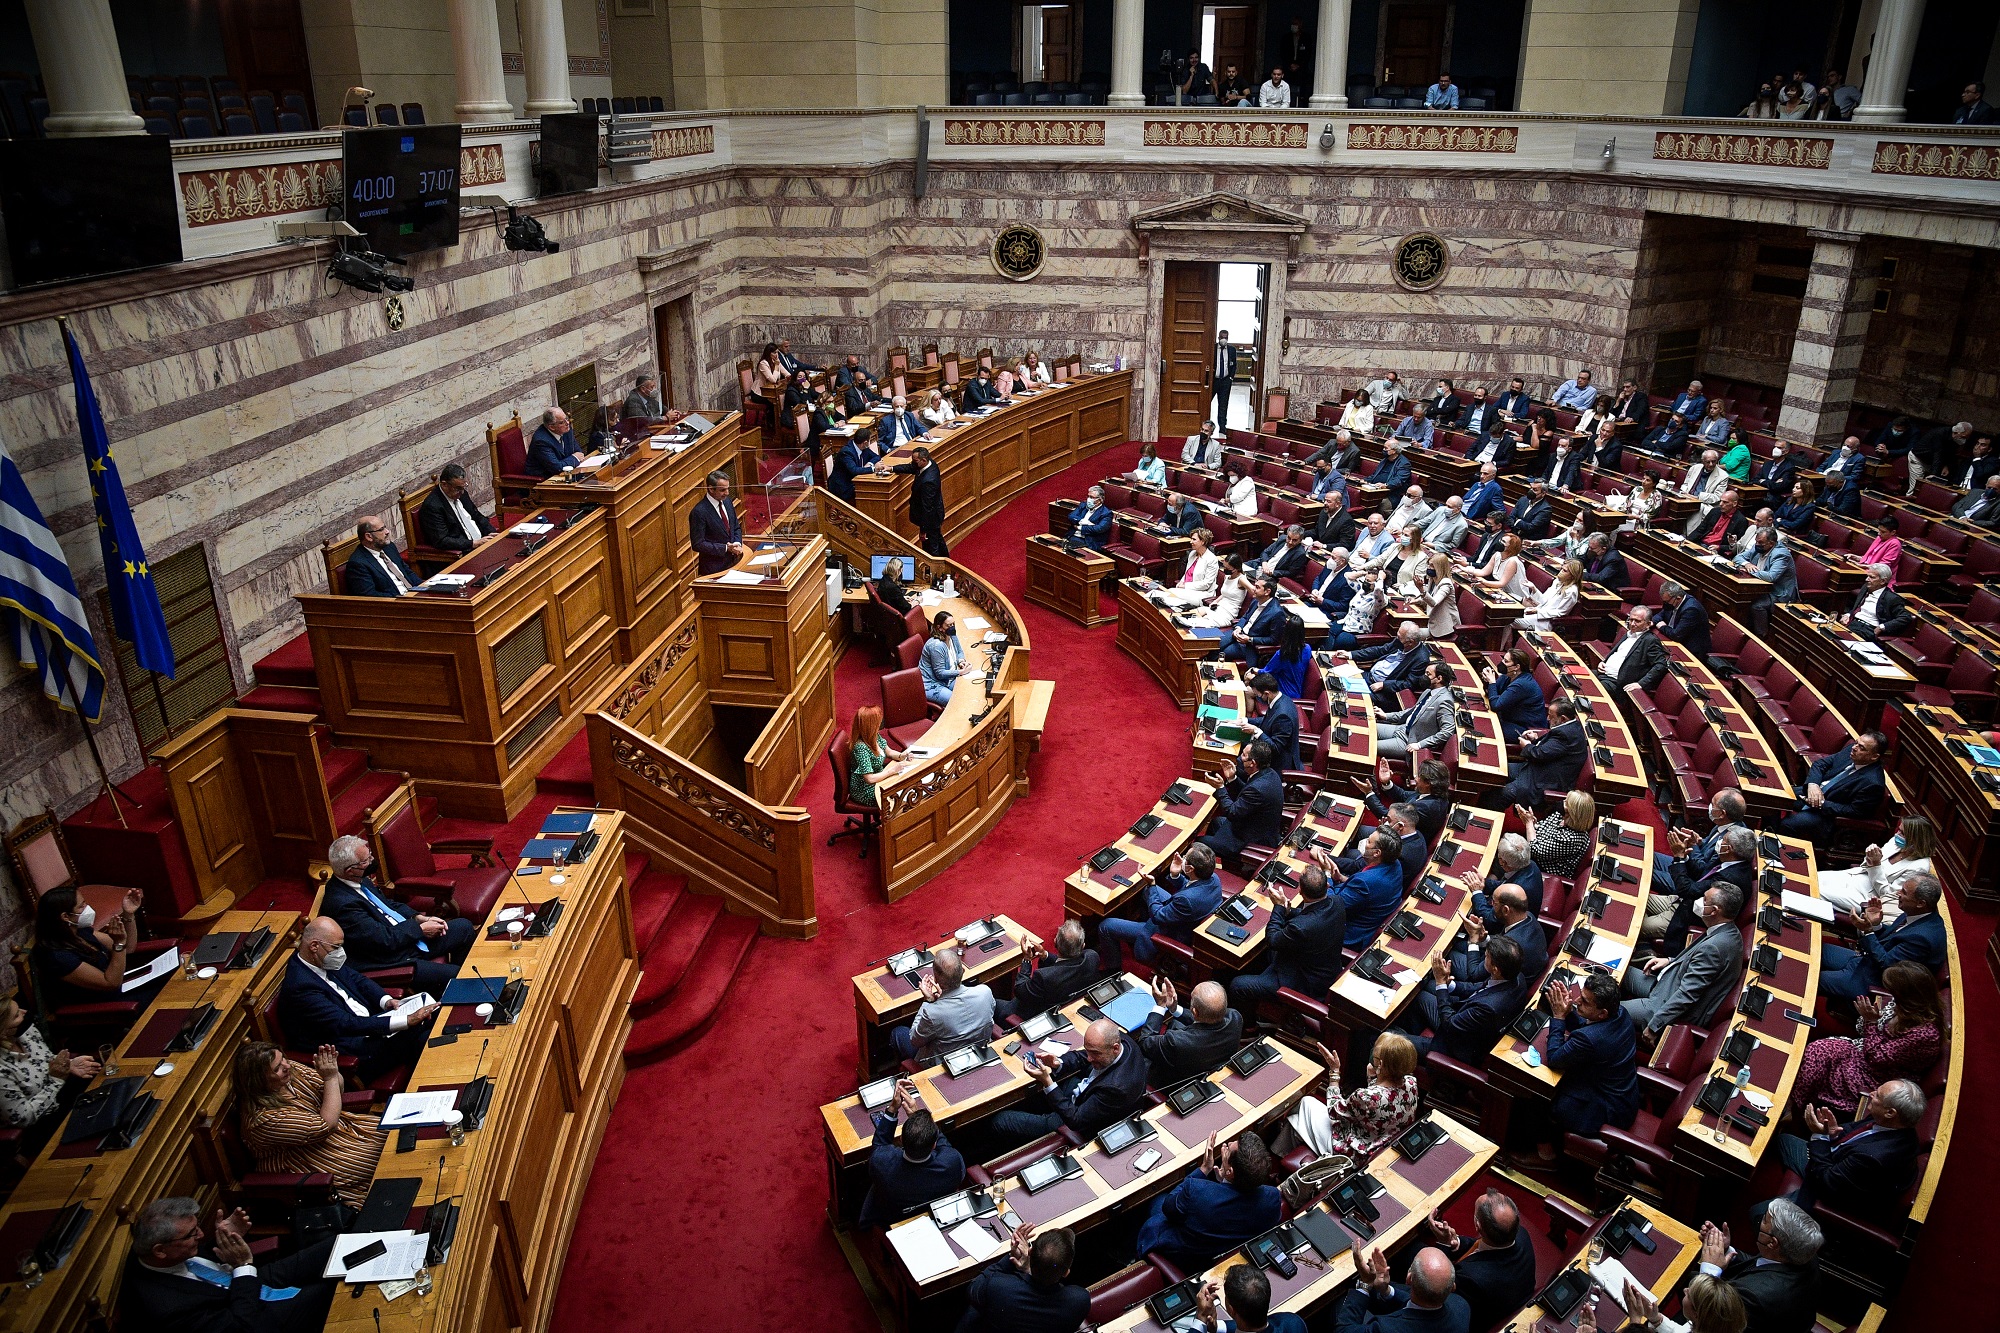 Μάχη κορυφής στη Βουλή – Κατάργηση της εισφοράς αλληλεγγύης & ξεπάγωμα αυξήσεων στις συντάξεις, ανακοίνωσε ο Κ. Μητσοτάκης